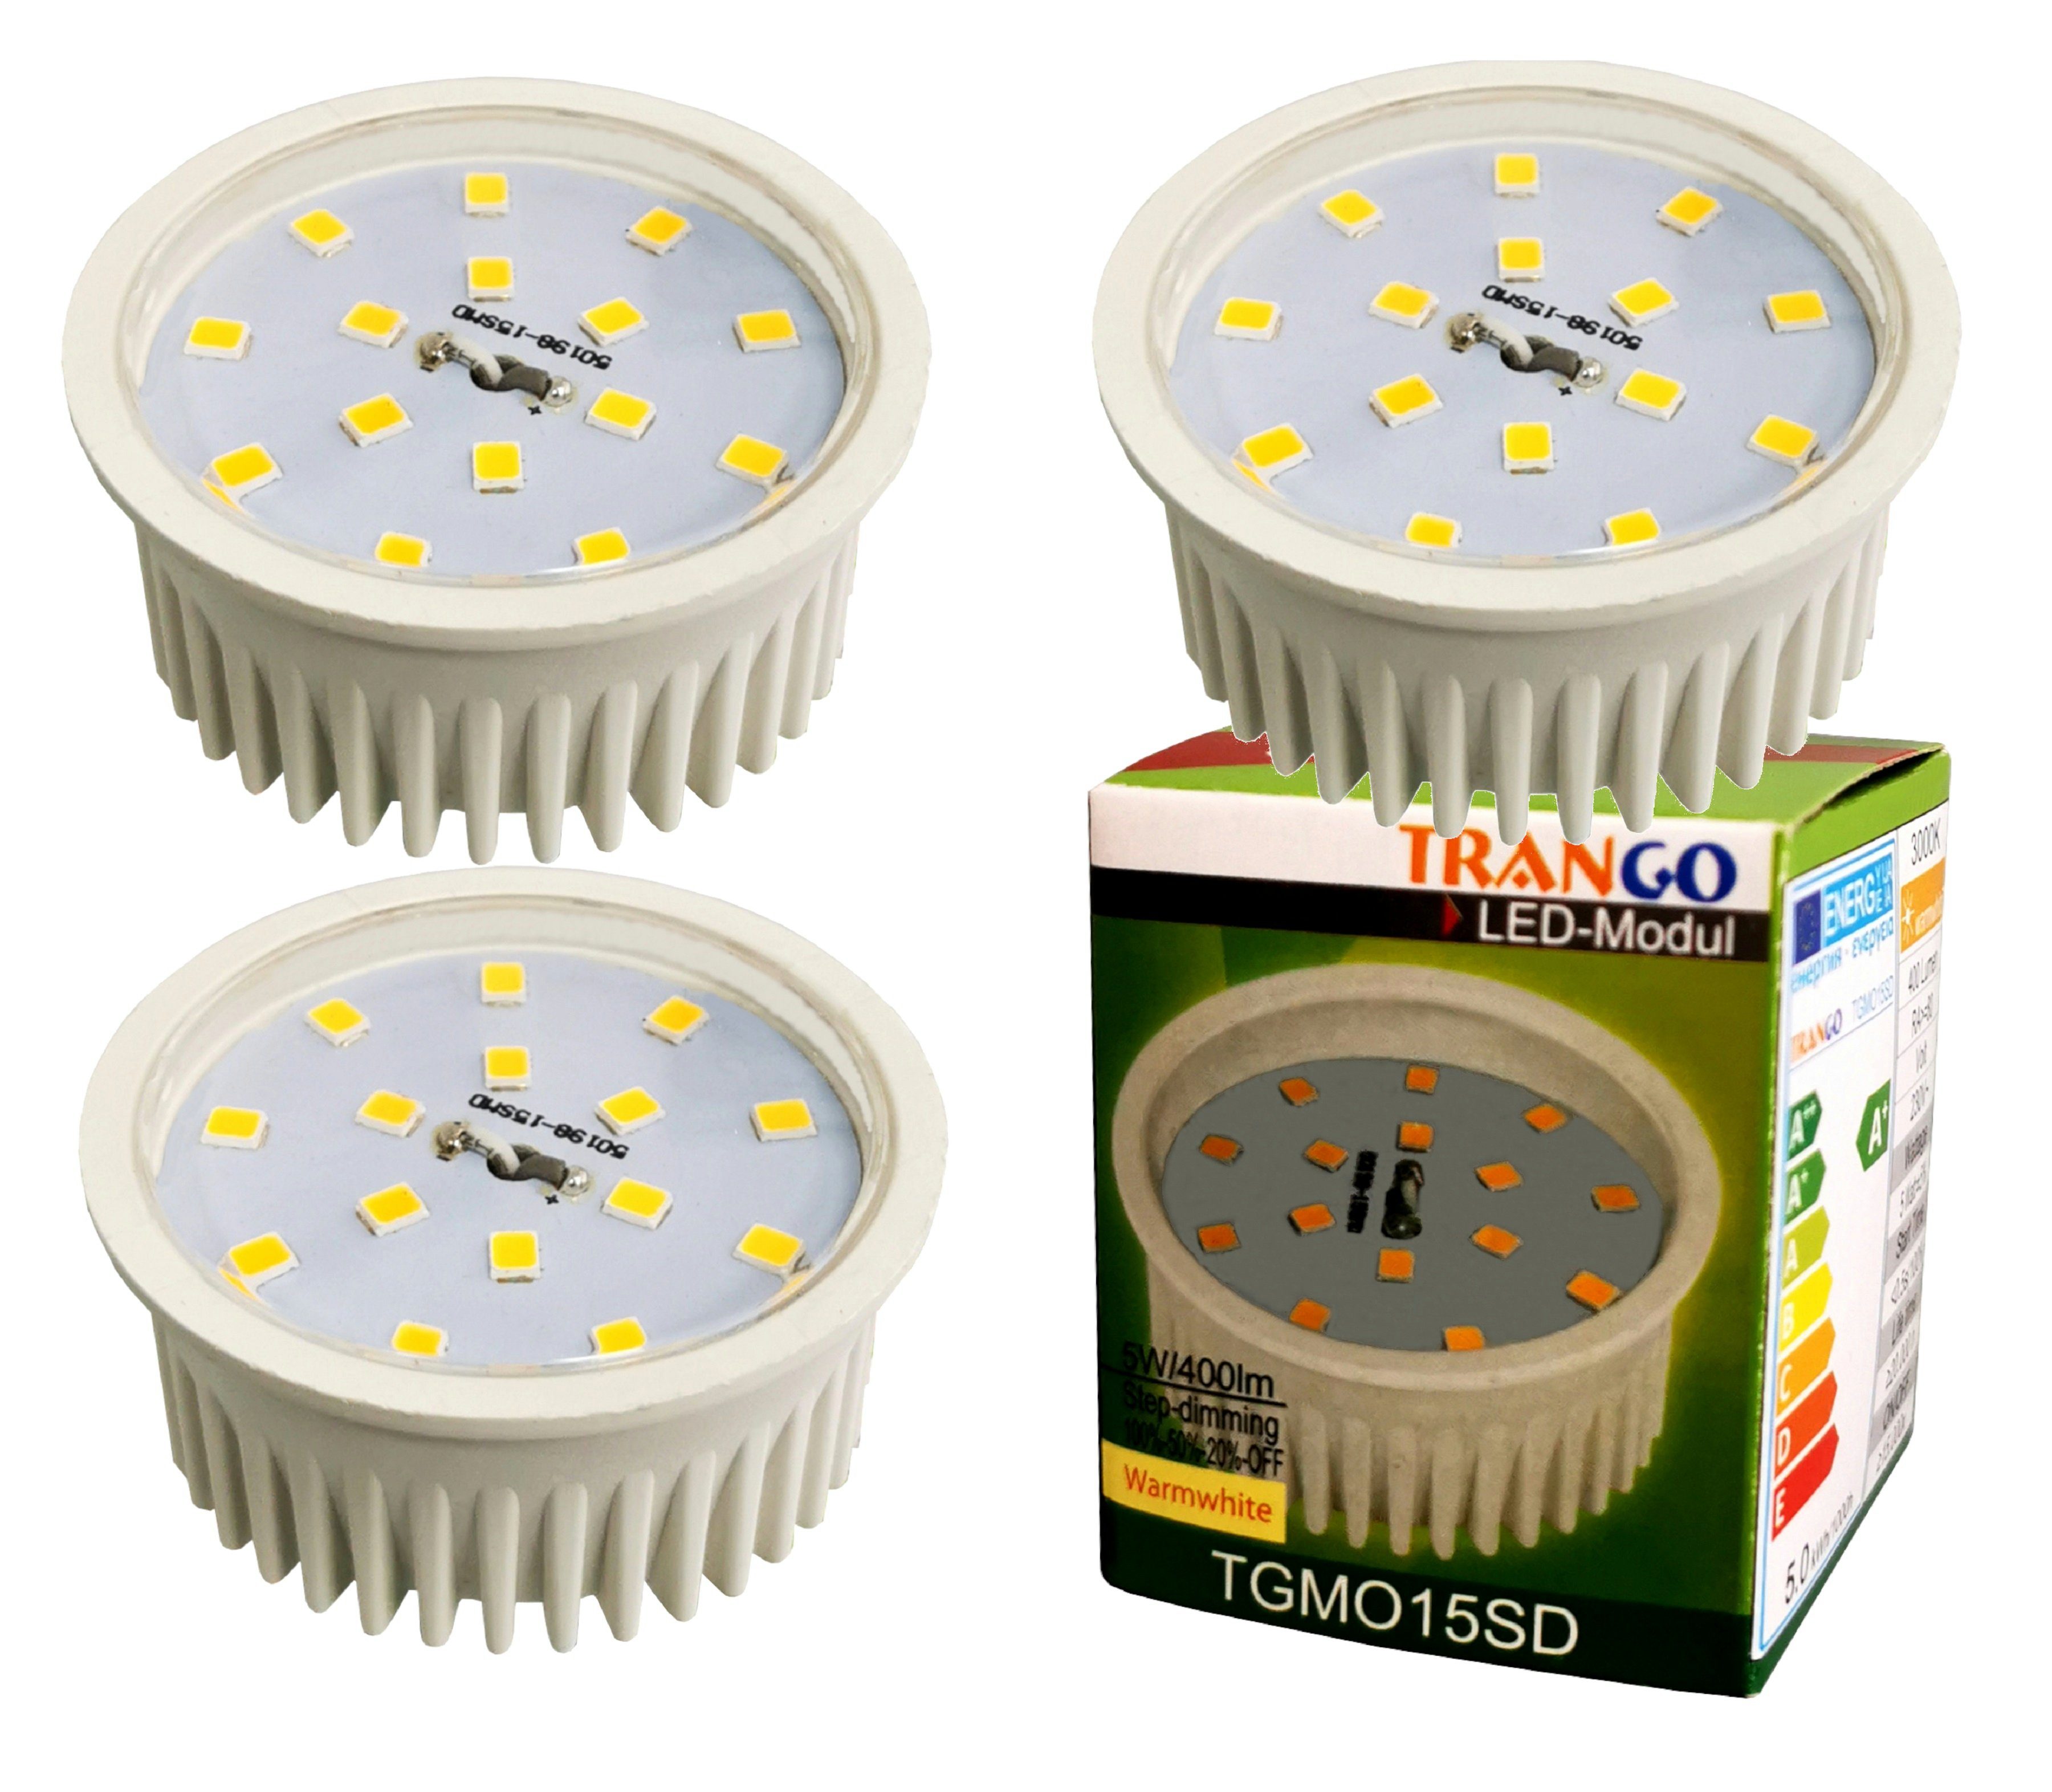 TRANGO LED-Leuchtmittel, 3er Pack MO15-3 LED Modul Ultra flach 5.0 Watt nur 2,3cm hoch 3000K warmweiß zum Ersetzen von GU10 & MR16 Halogen Leuchtmittel, 3 St., für Einbauleuchte, Deckenstrahler, Einbaustrahler, Deckenleuchte